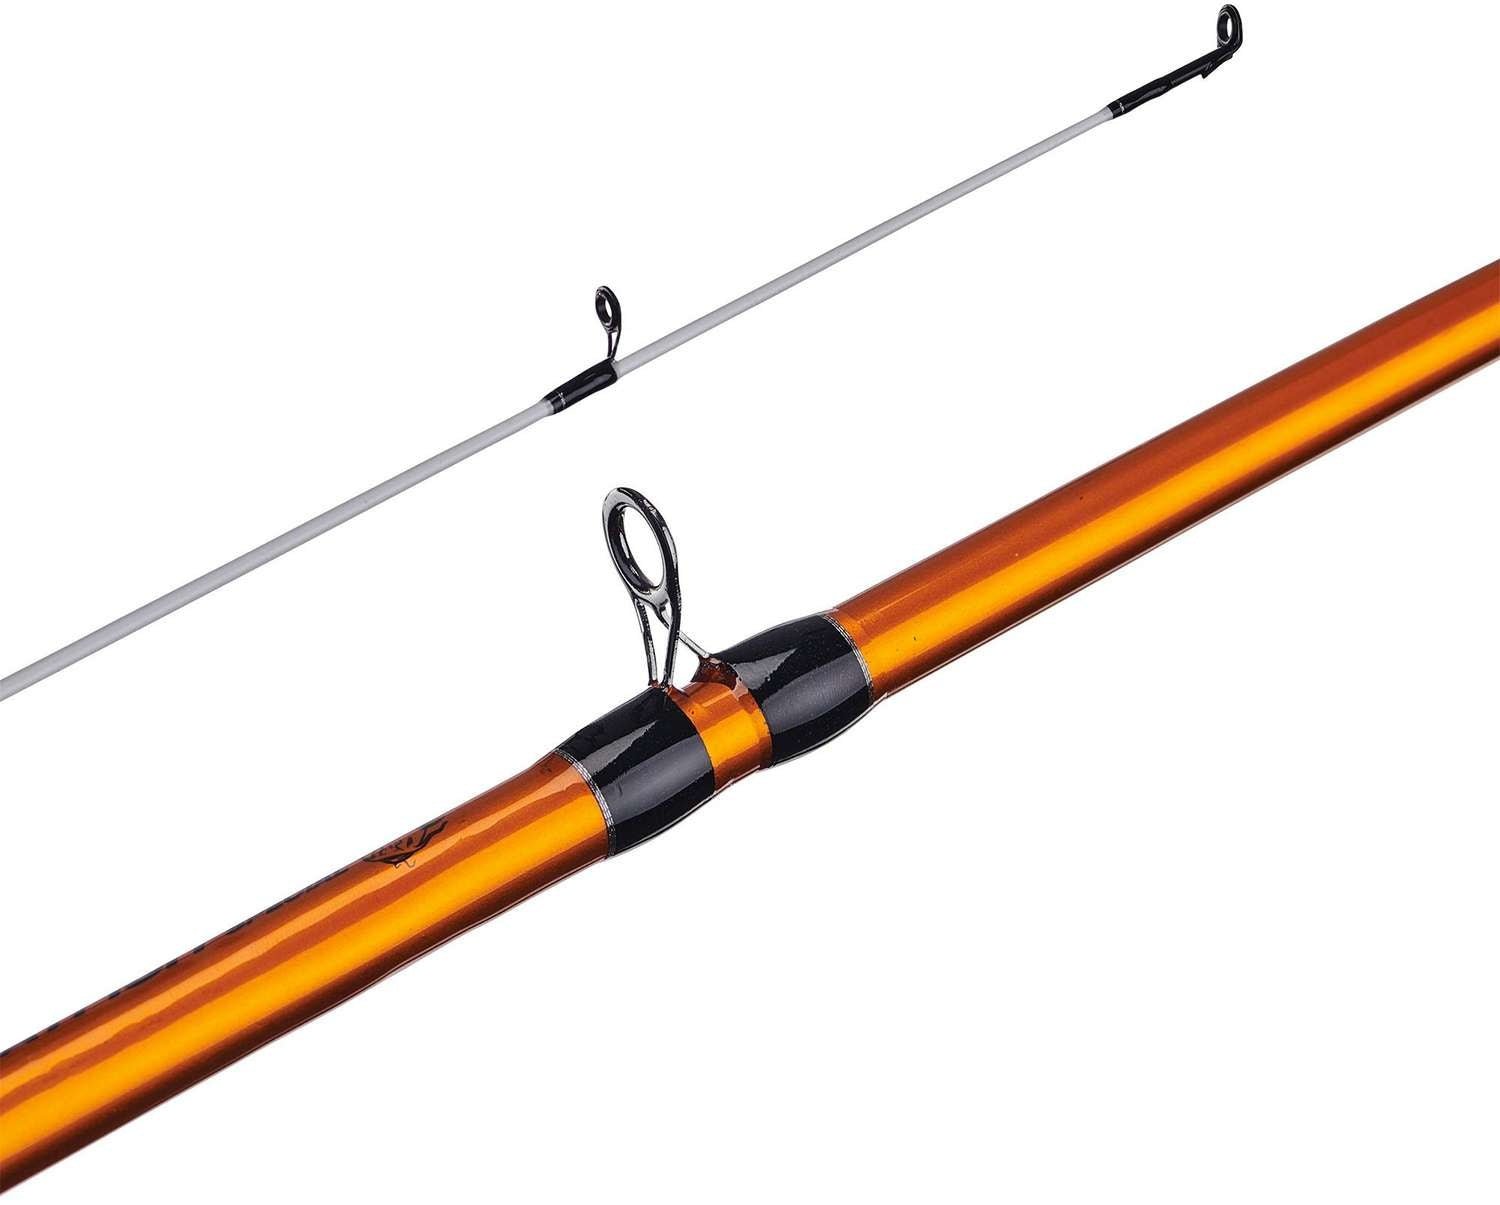 Ugly Stik Catfish Orange Casting Rod - 7' Mh